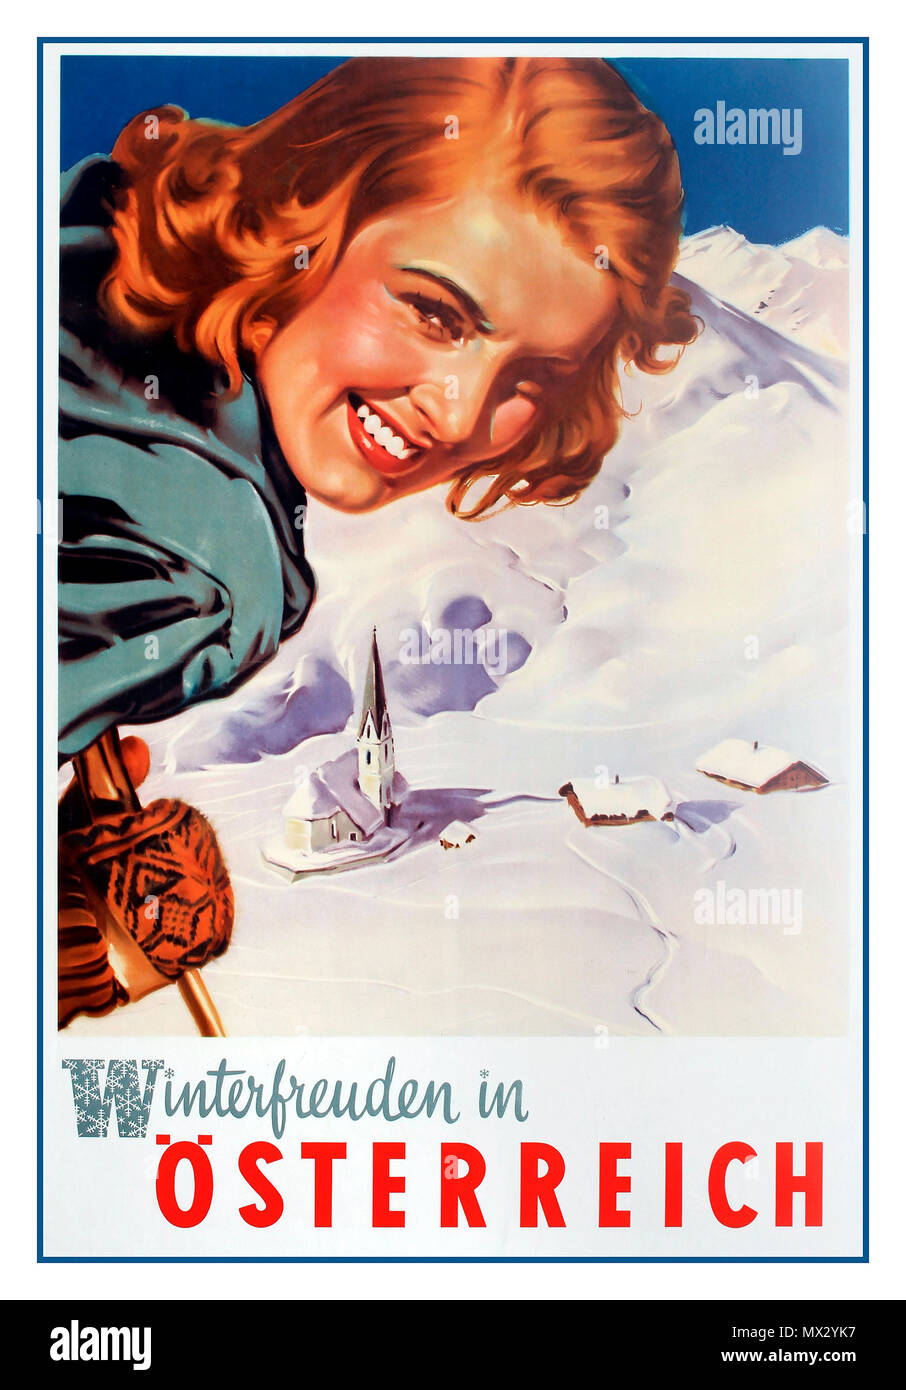 AUTRICHE SKI D'HIVER années 1950 Poster de voyage d'époque "les plaisirs d'hiver dans Autriche ski ski skieur ski montagnes ÖSTERREICH Winterfreuden artiste Aigner Banque D'Images